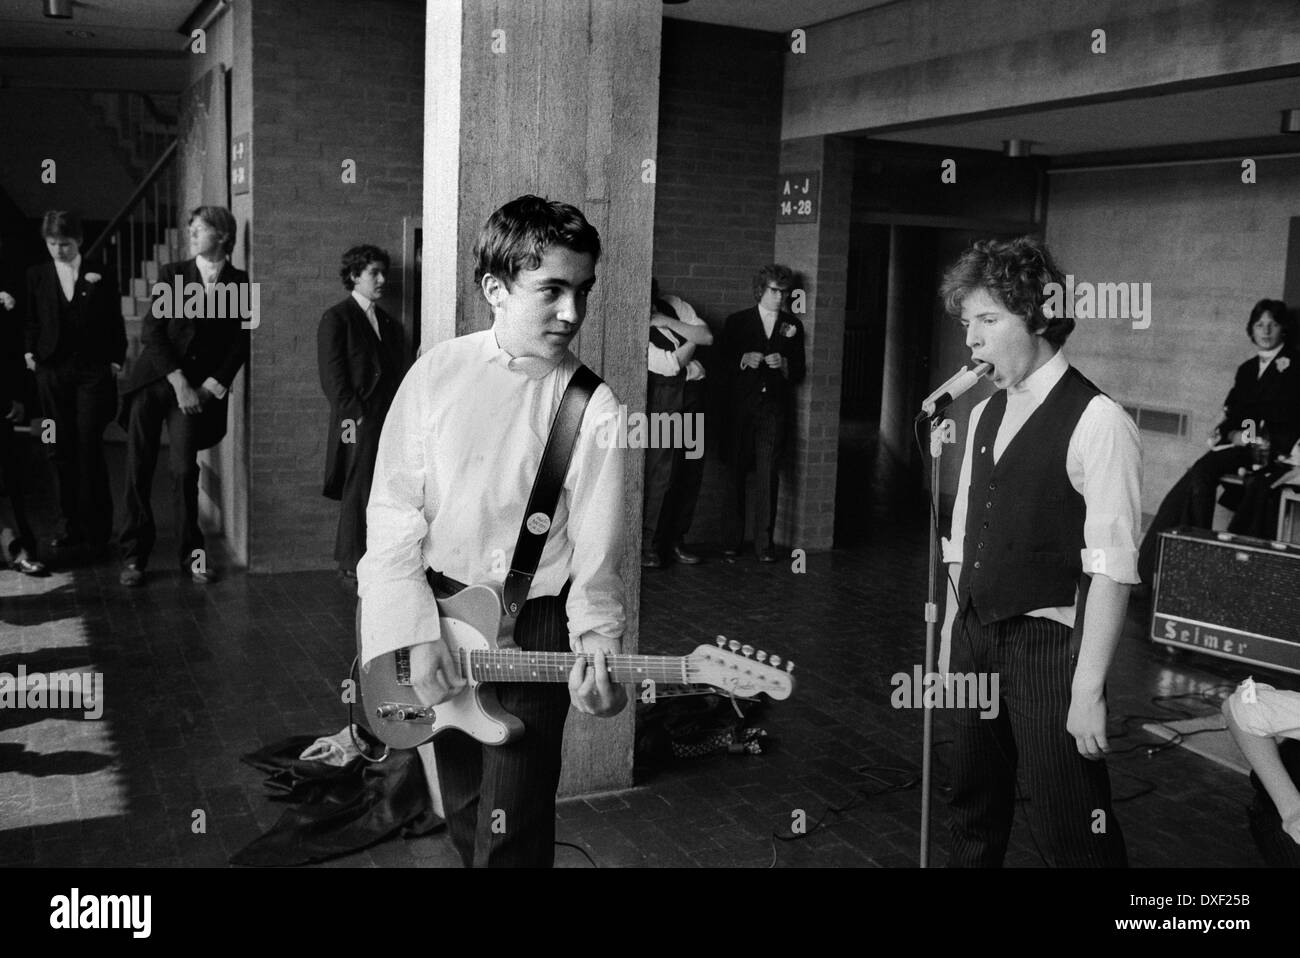 Groupe de rock étudiant. Eton College parents Day 4 juin 1978. Des écoliers adolescents jouent dans le groupe rock de l'école Eton. Eton, Windsor, Berkshire Royaume-Uni années 1970 HOMER SYKES Banque D'Images